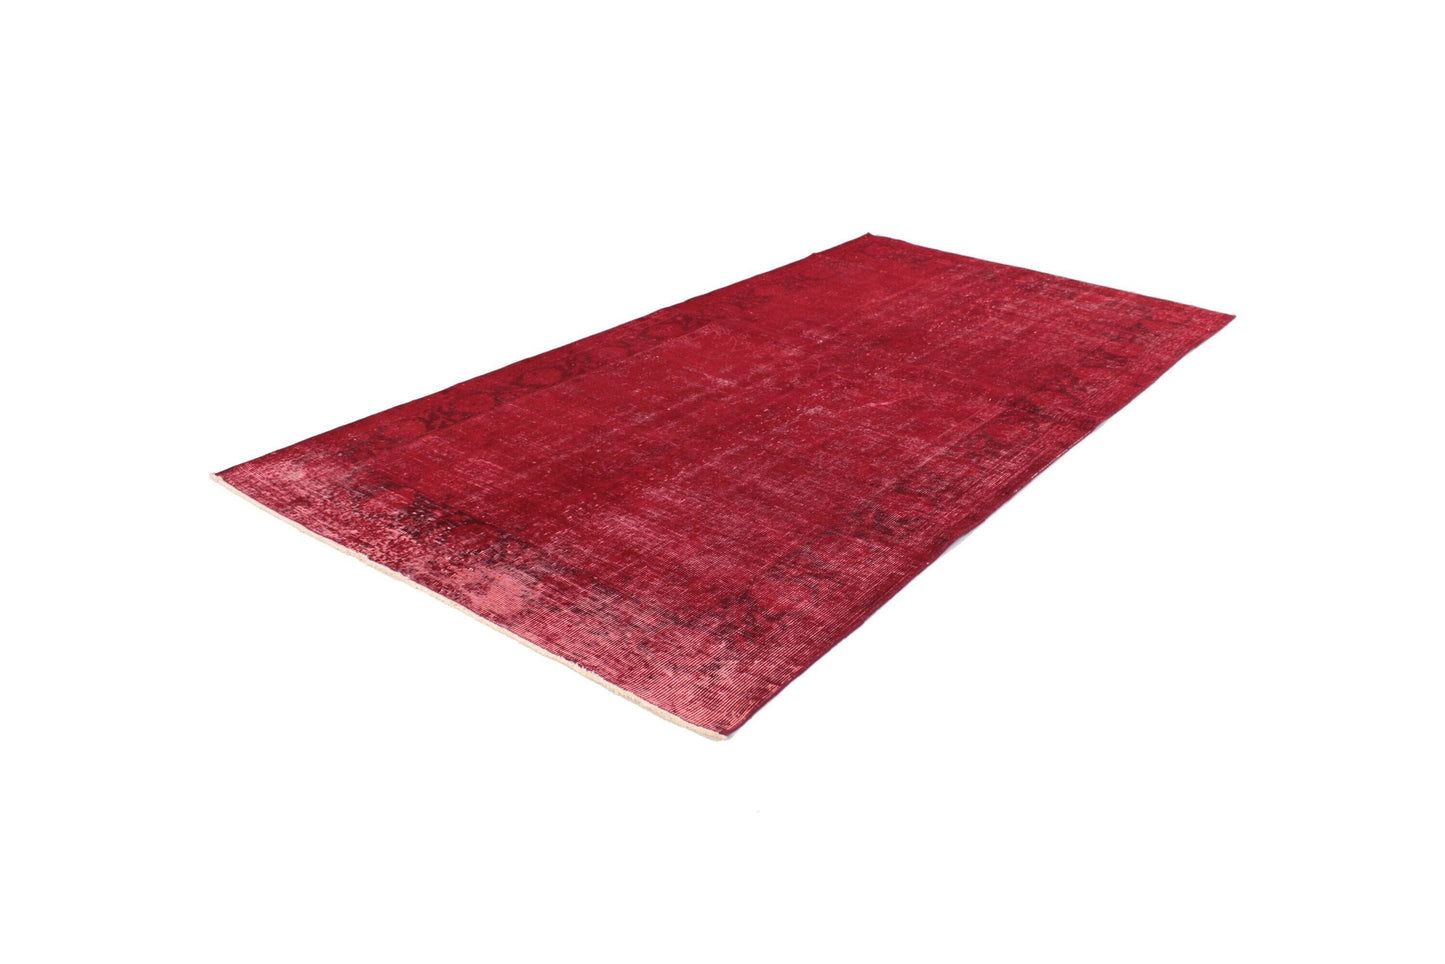 Rug 5x7, Red Vintage Turkish Carpet Rug, Bohemian Rug, Overdyed Rug, Floral Rug, Bedroom Rug, Boho Decor,3337